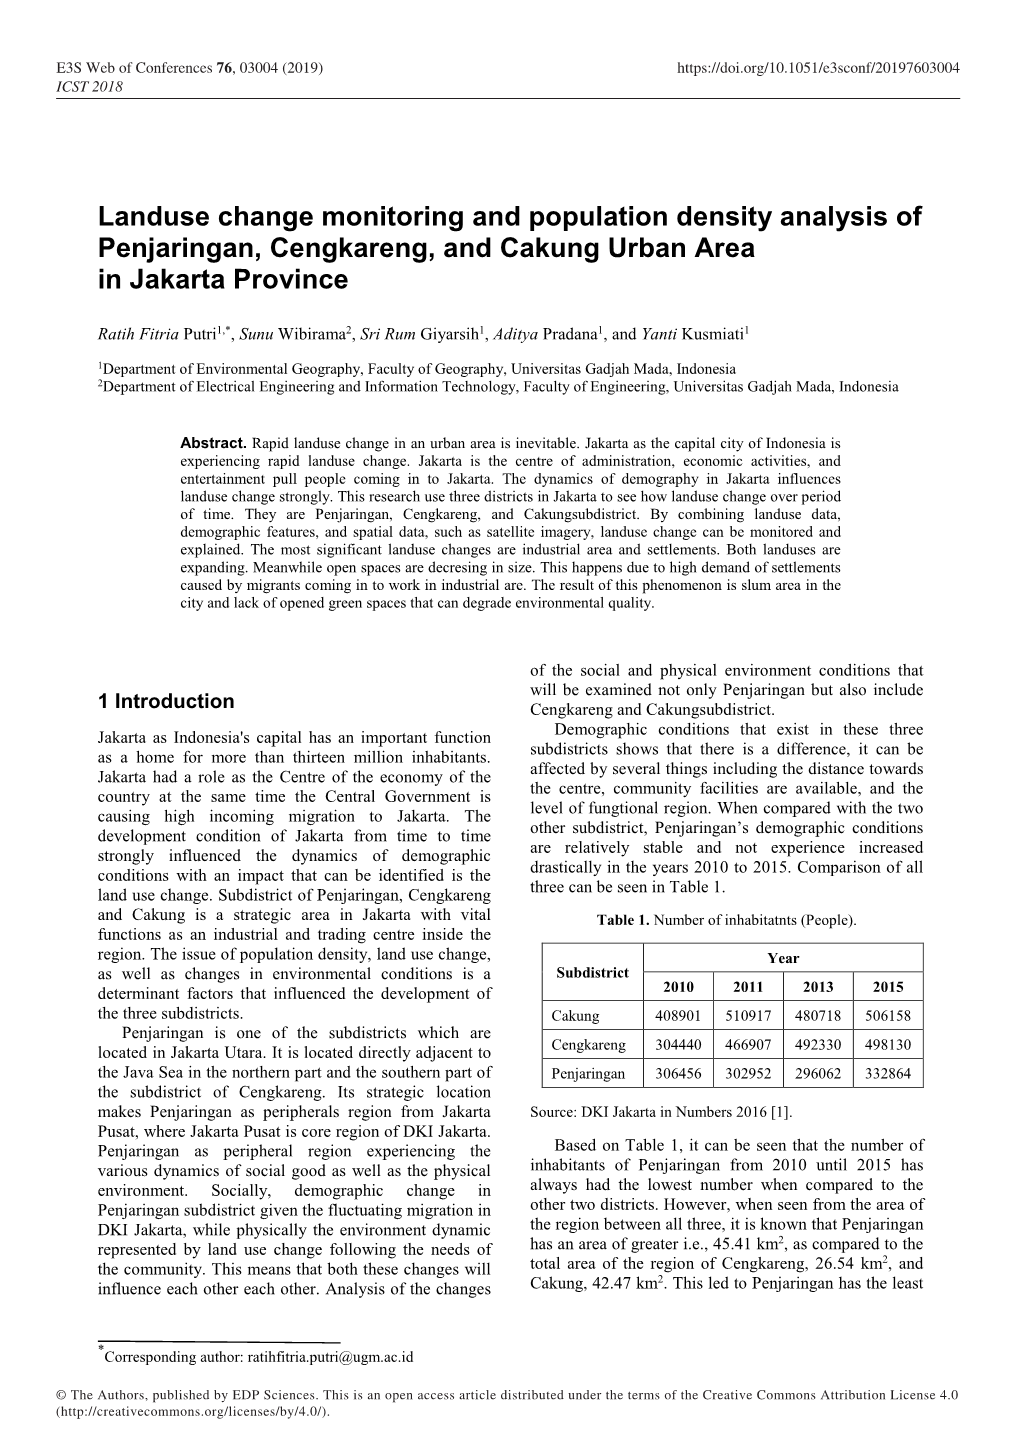 Landuse Change Monitoring and Population Density Analysis of Penjaringan, Cengkareng, and Cakung Urban Area in Jakarta Province